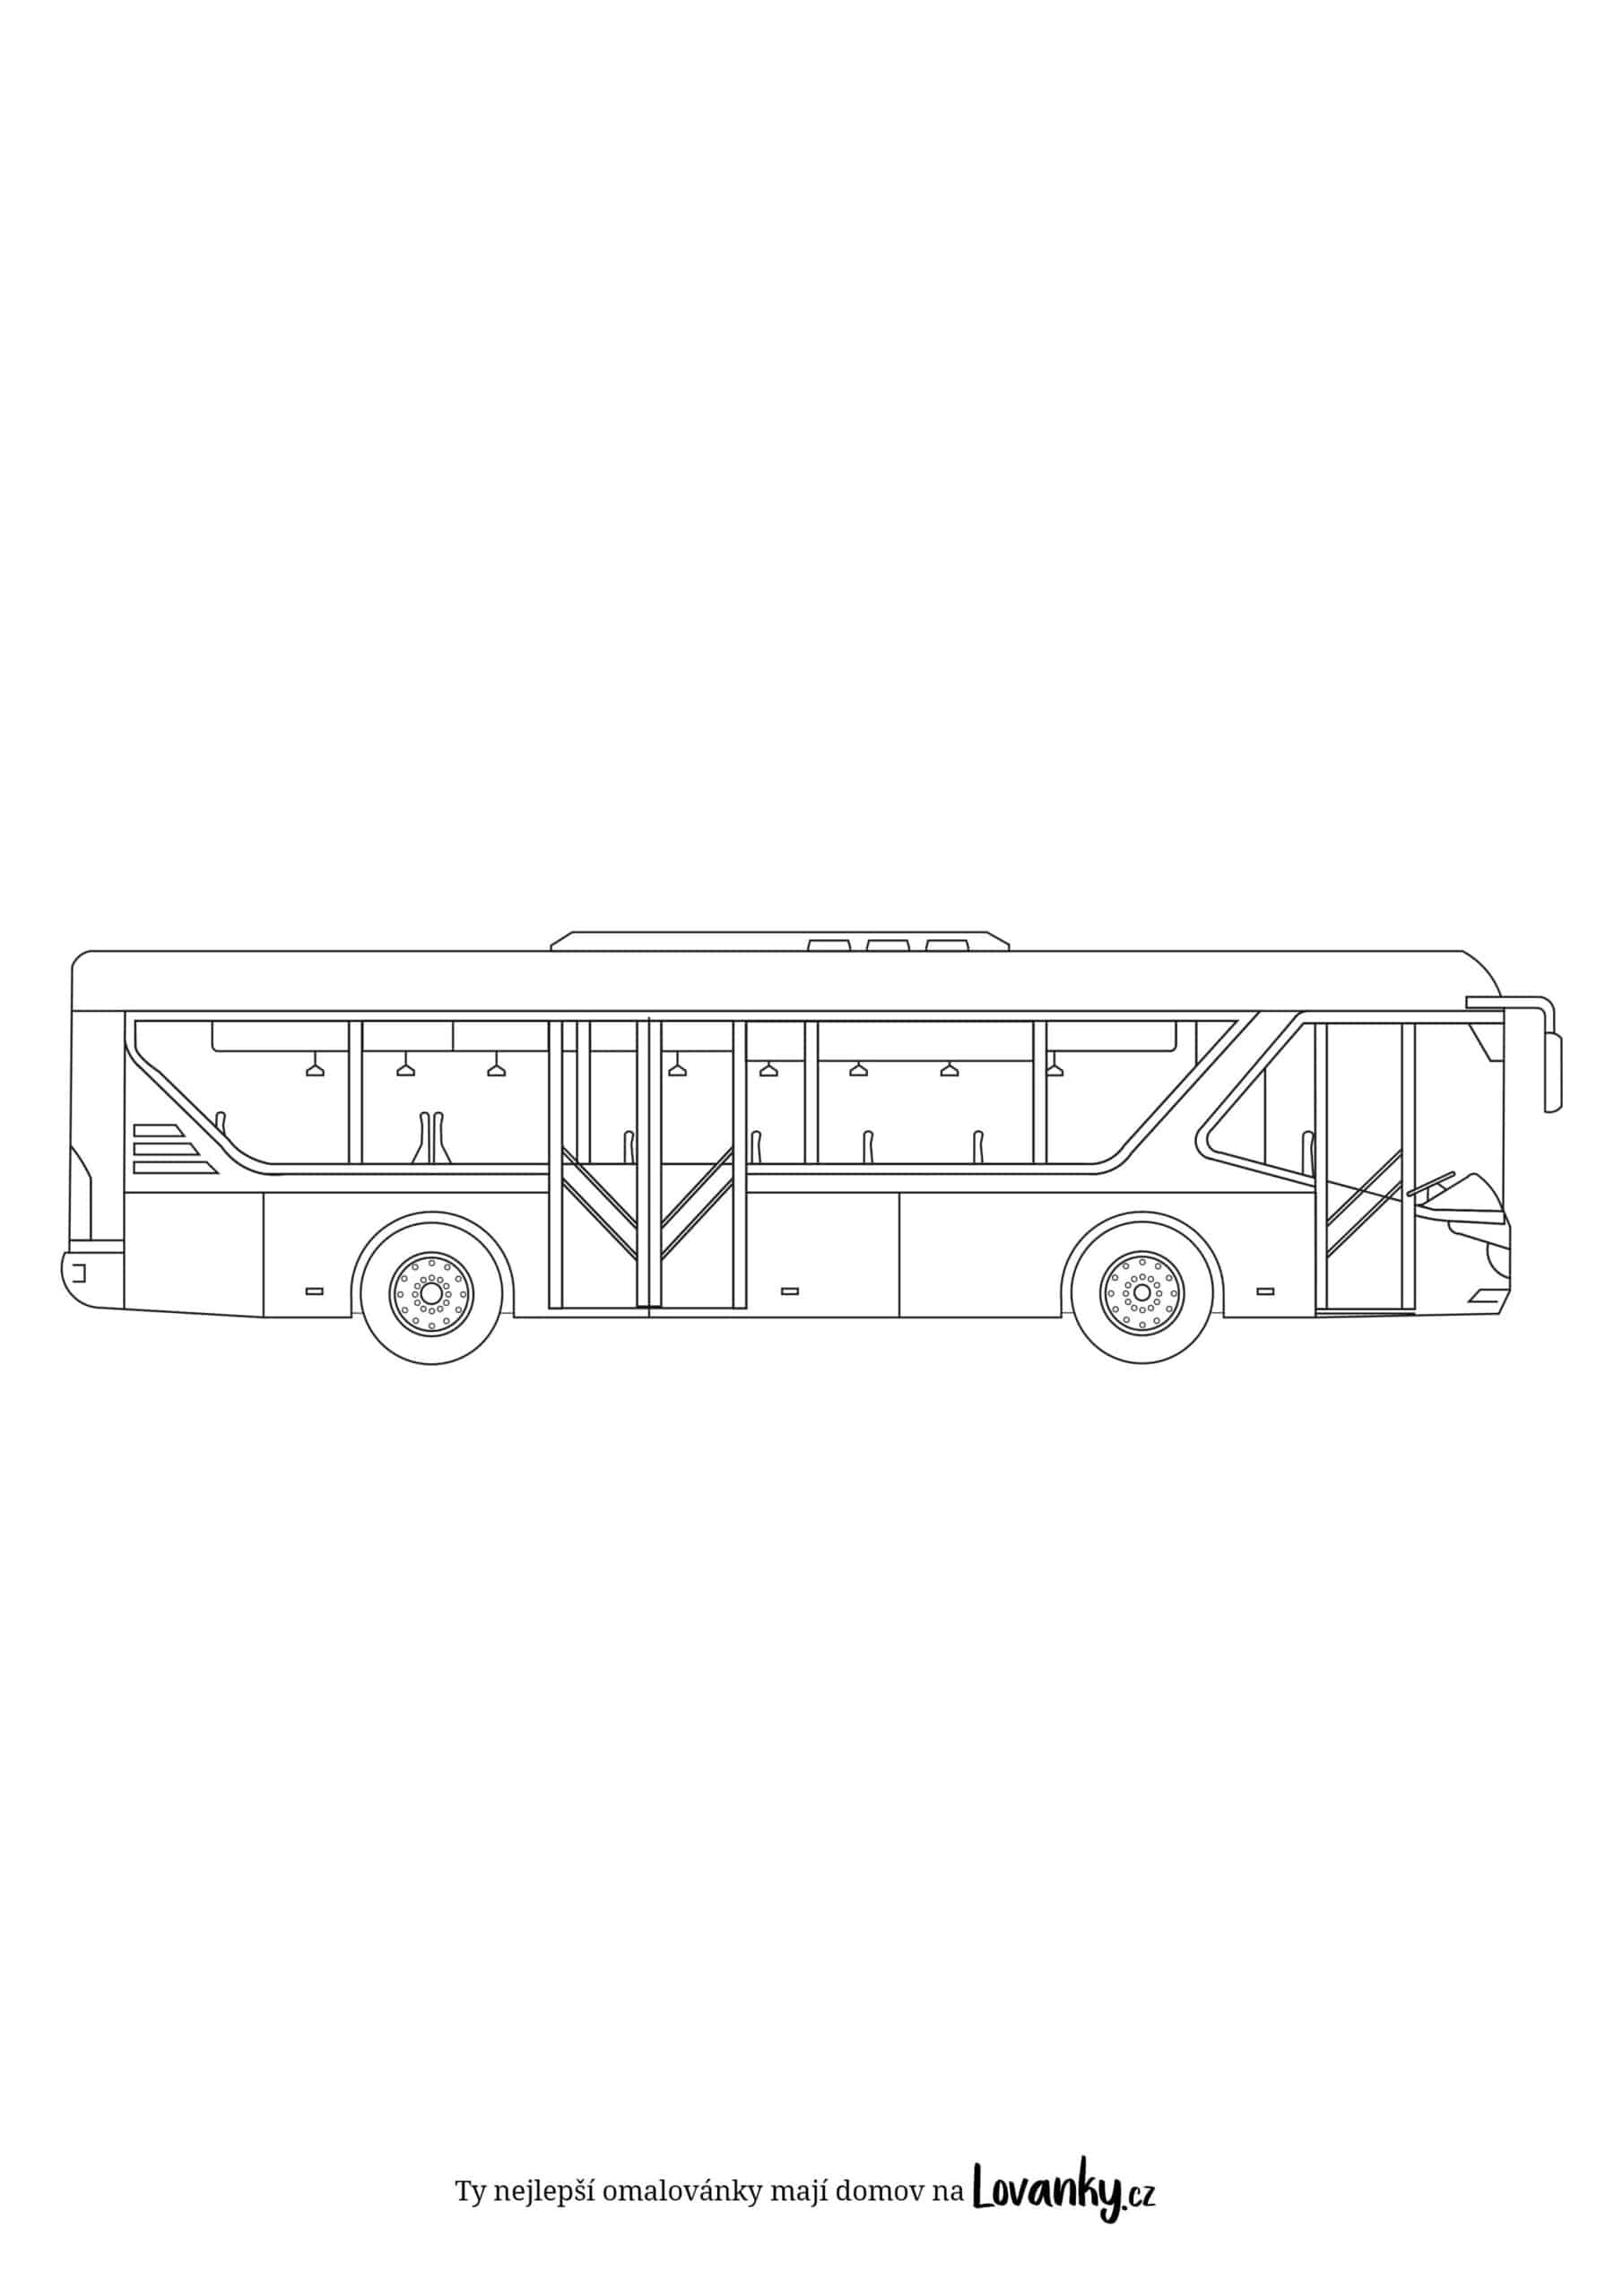 Příměstský autobus omalovánky